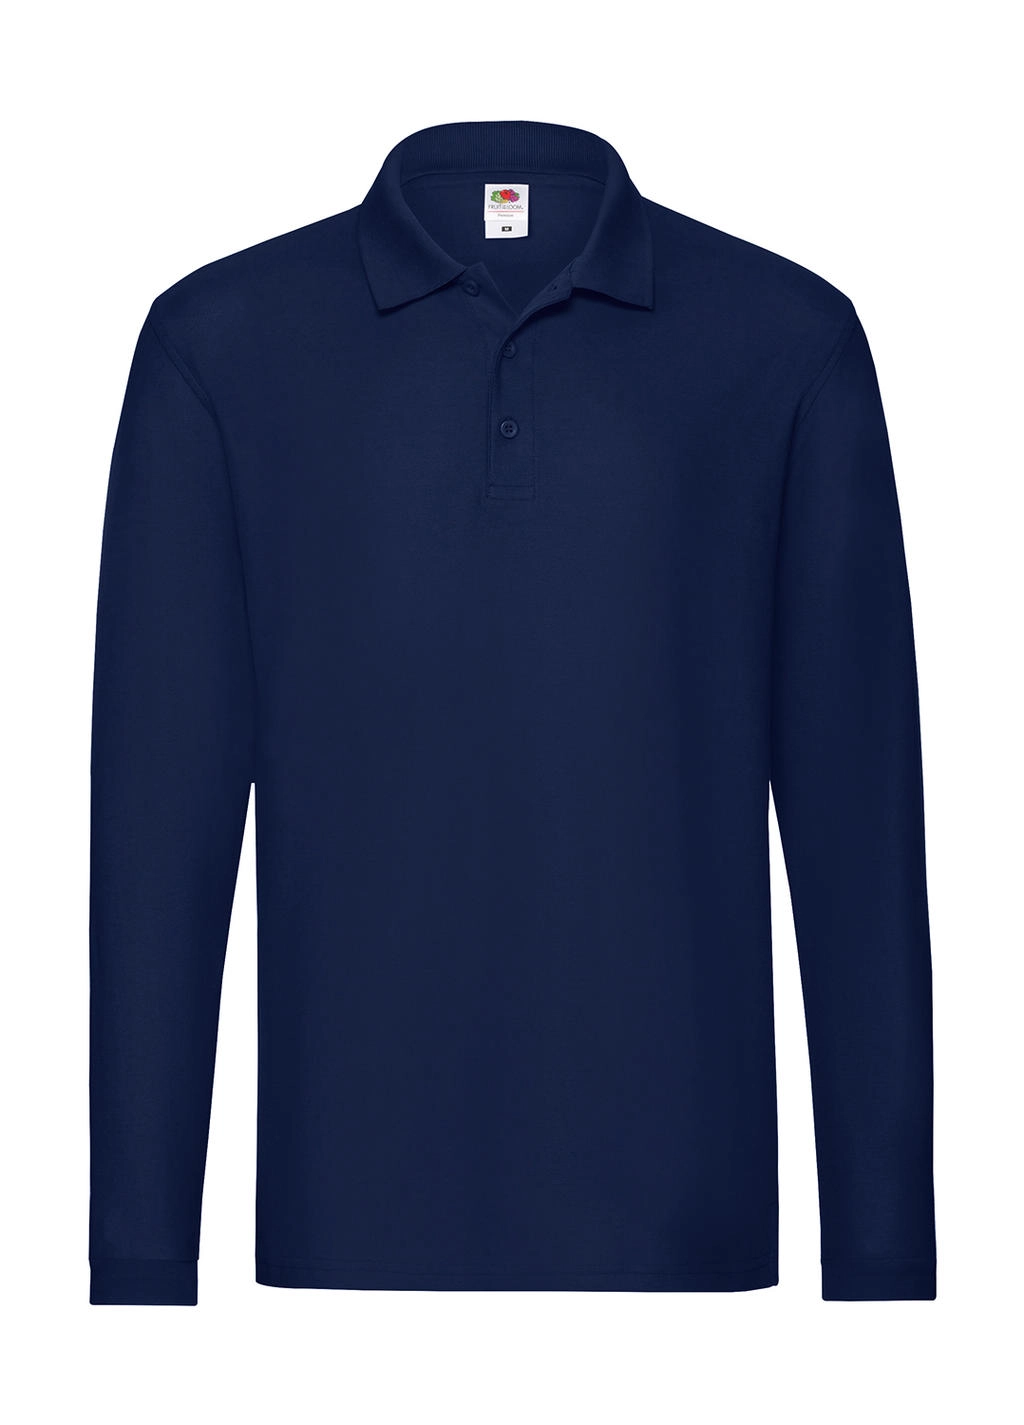 Premium Long Sleeve Polo zum Besticken und Bedrucken in der Farbe Navy mit Ihren Logo, Schriftzug oder Motiv.